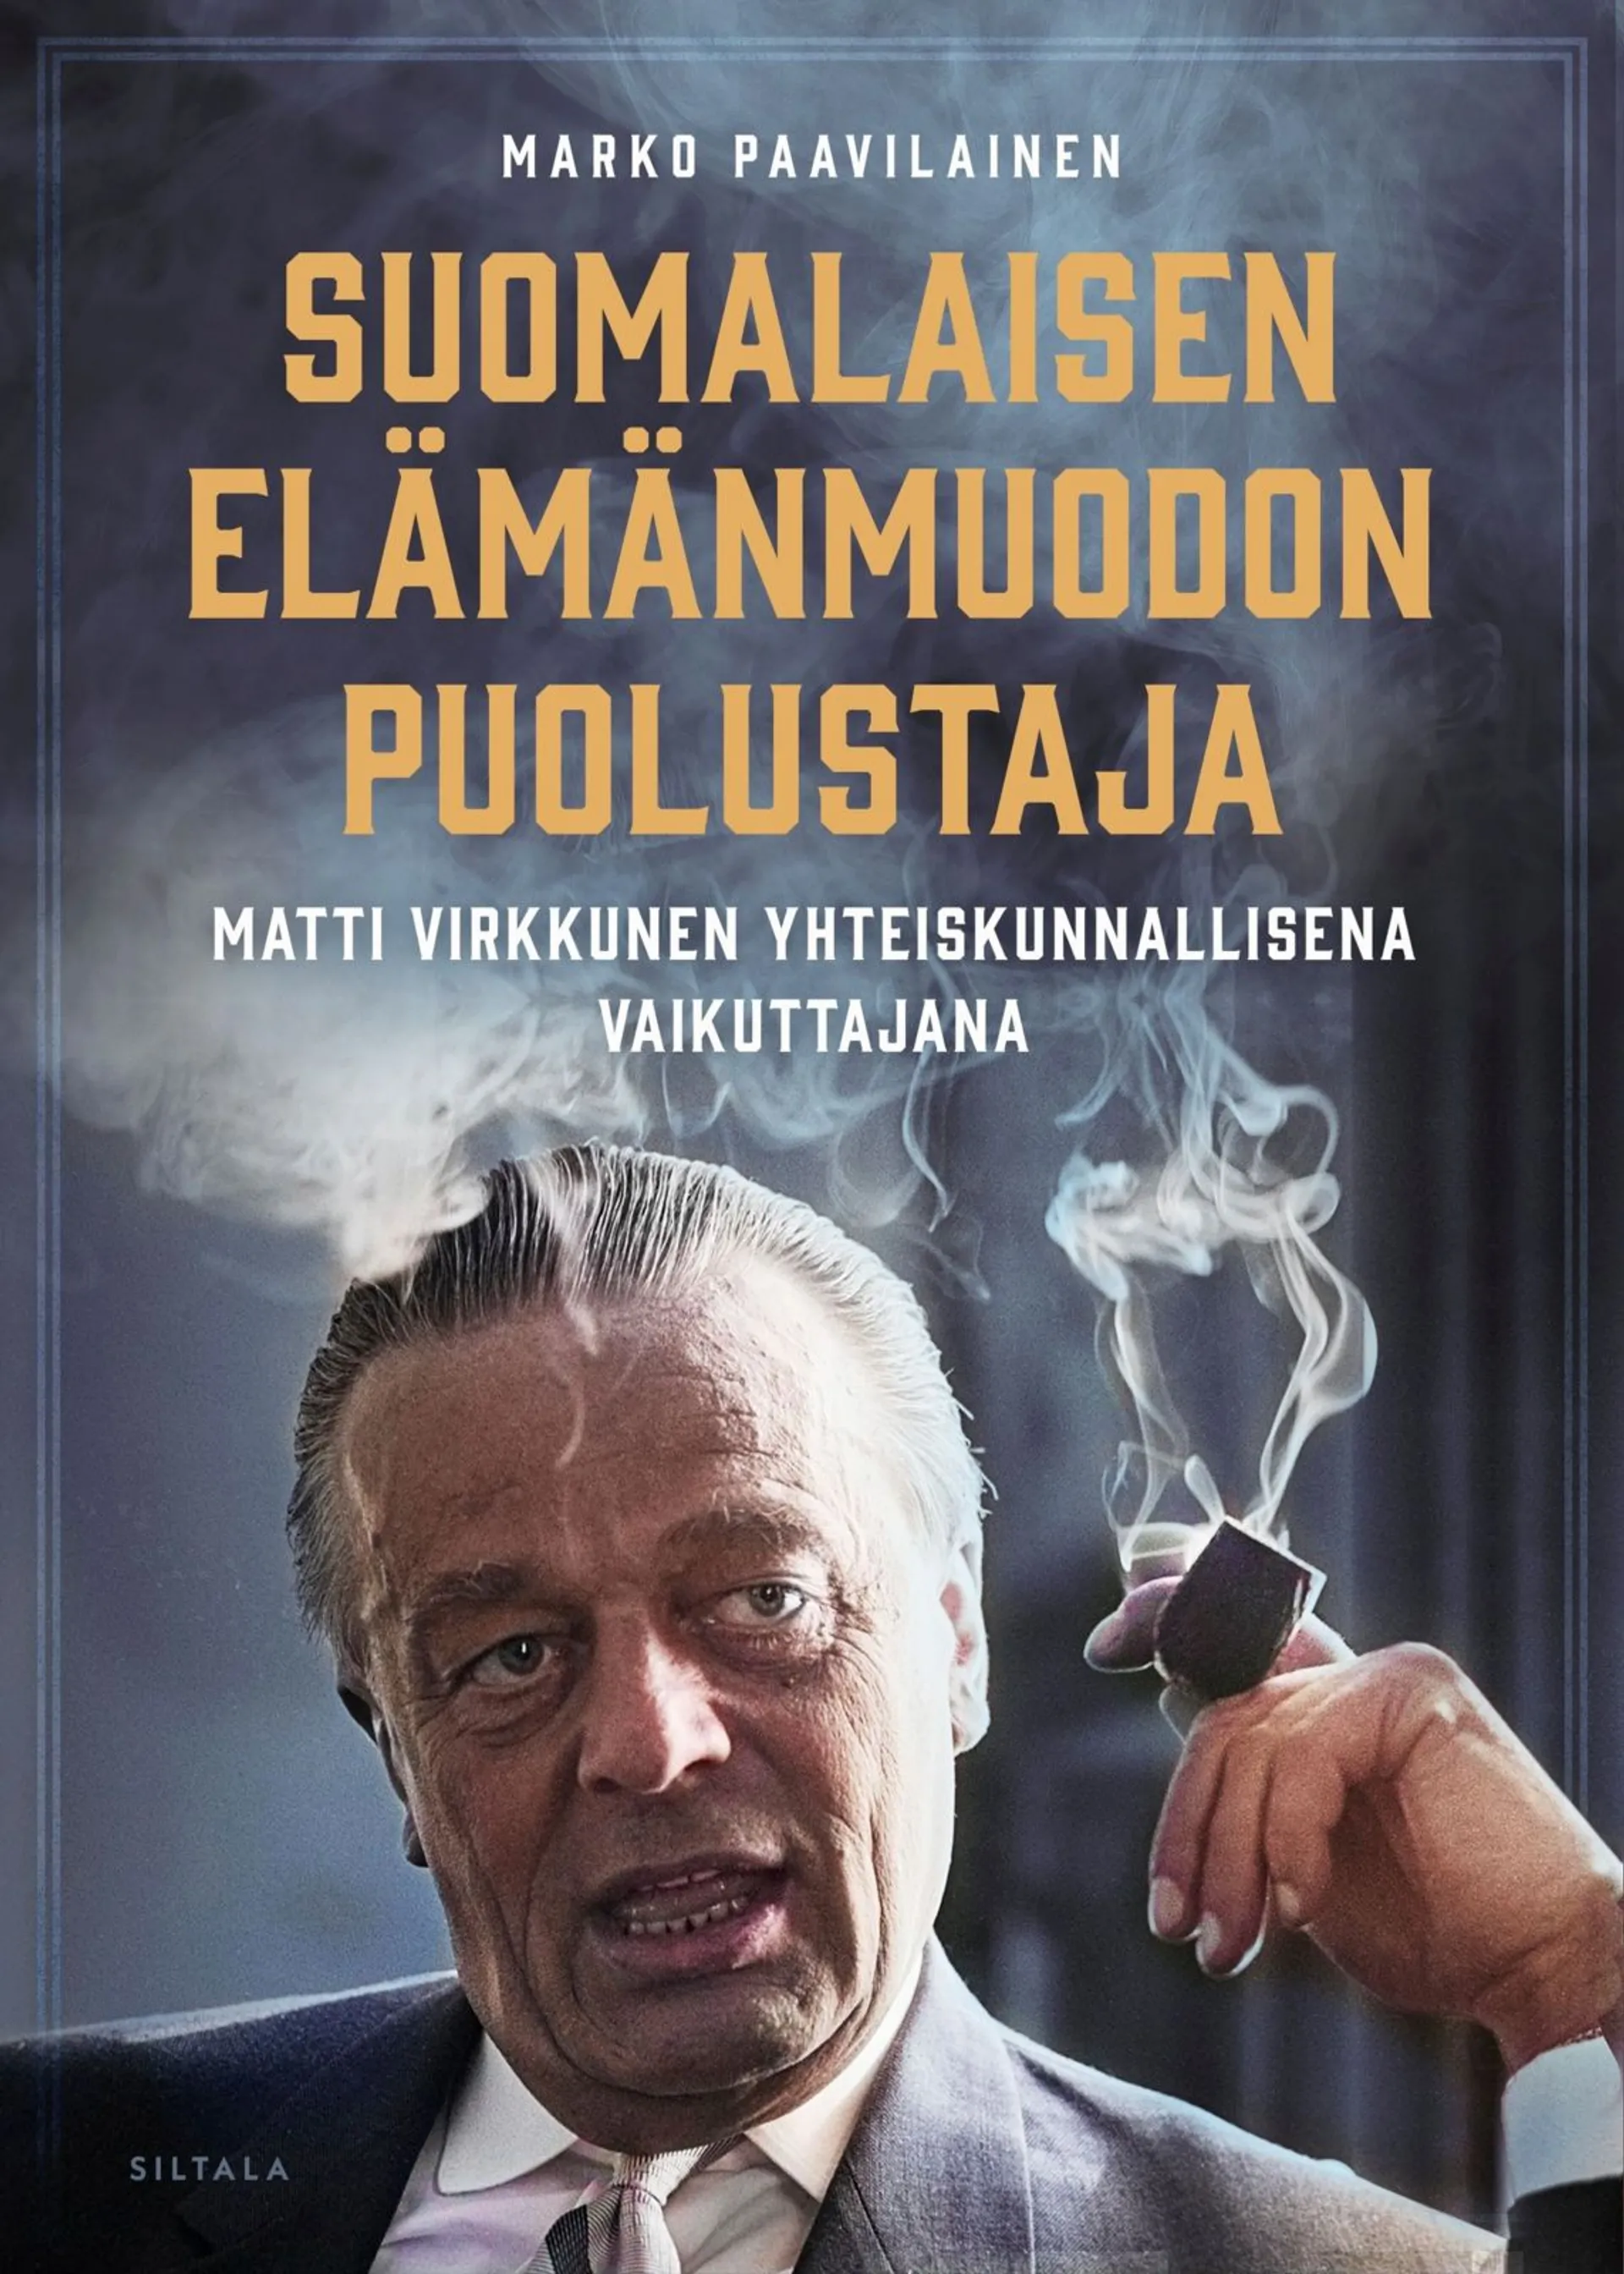 Paavilainen, Suomalaisen elämänmuodon puolustaja - Matti Virkkunen yhteiskunnallisena vaikuttajana